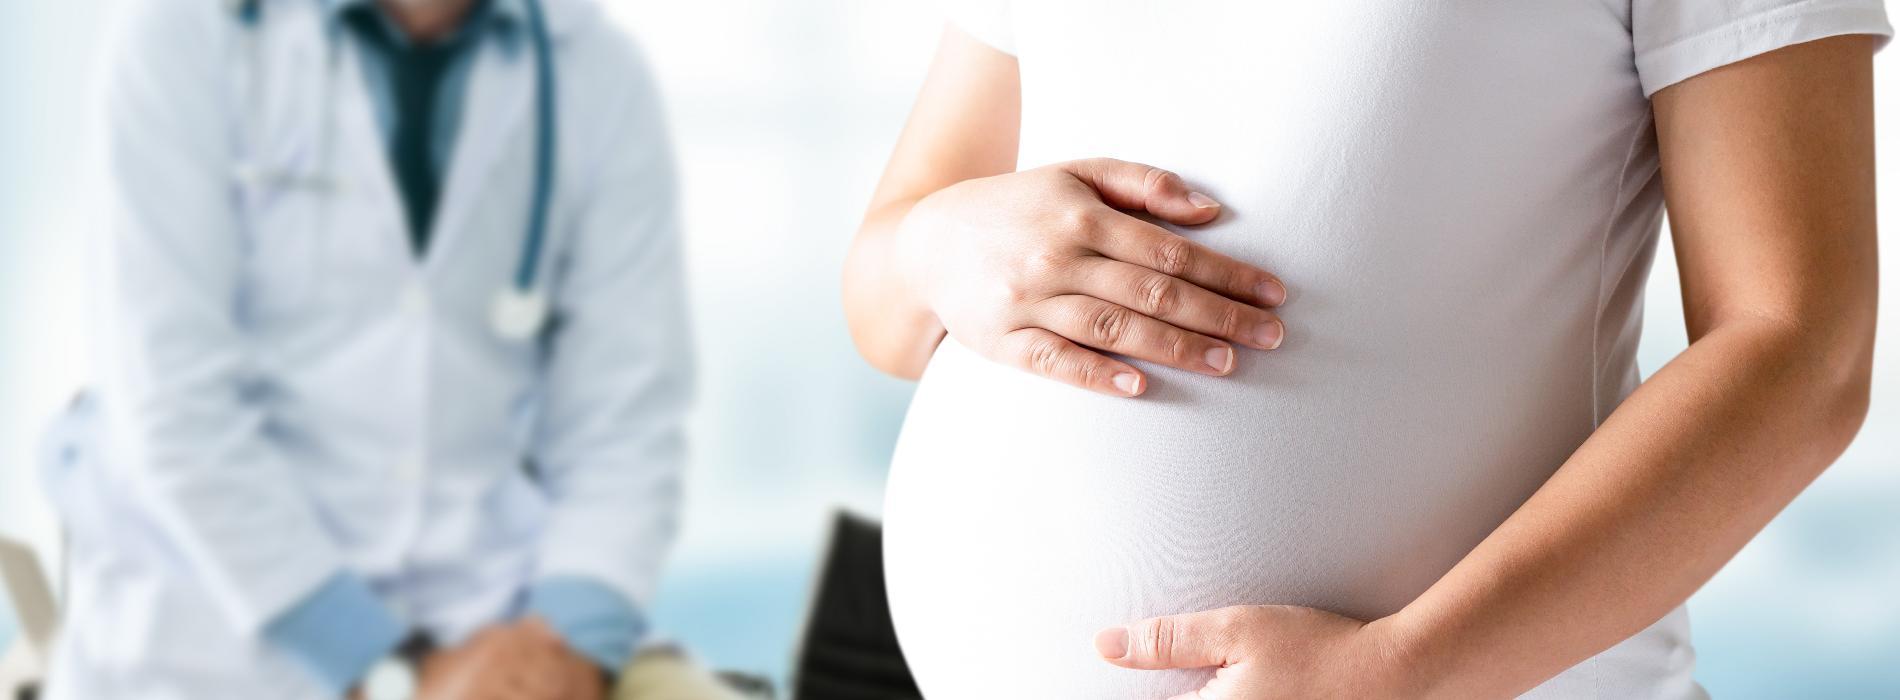 Ciąża po 35. roku życia - powikłania, ryzyka, niezbędne badania